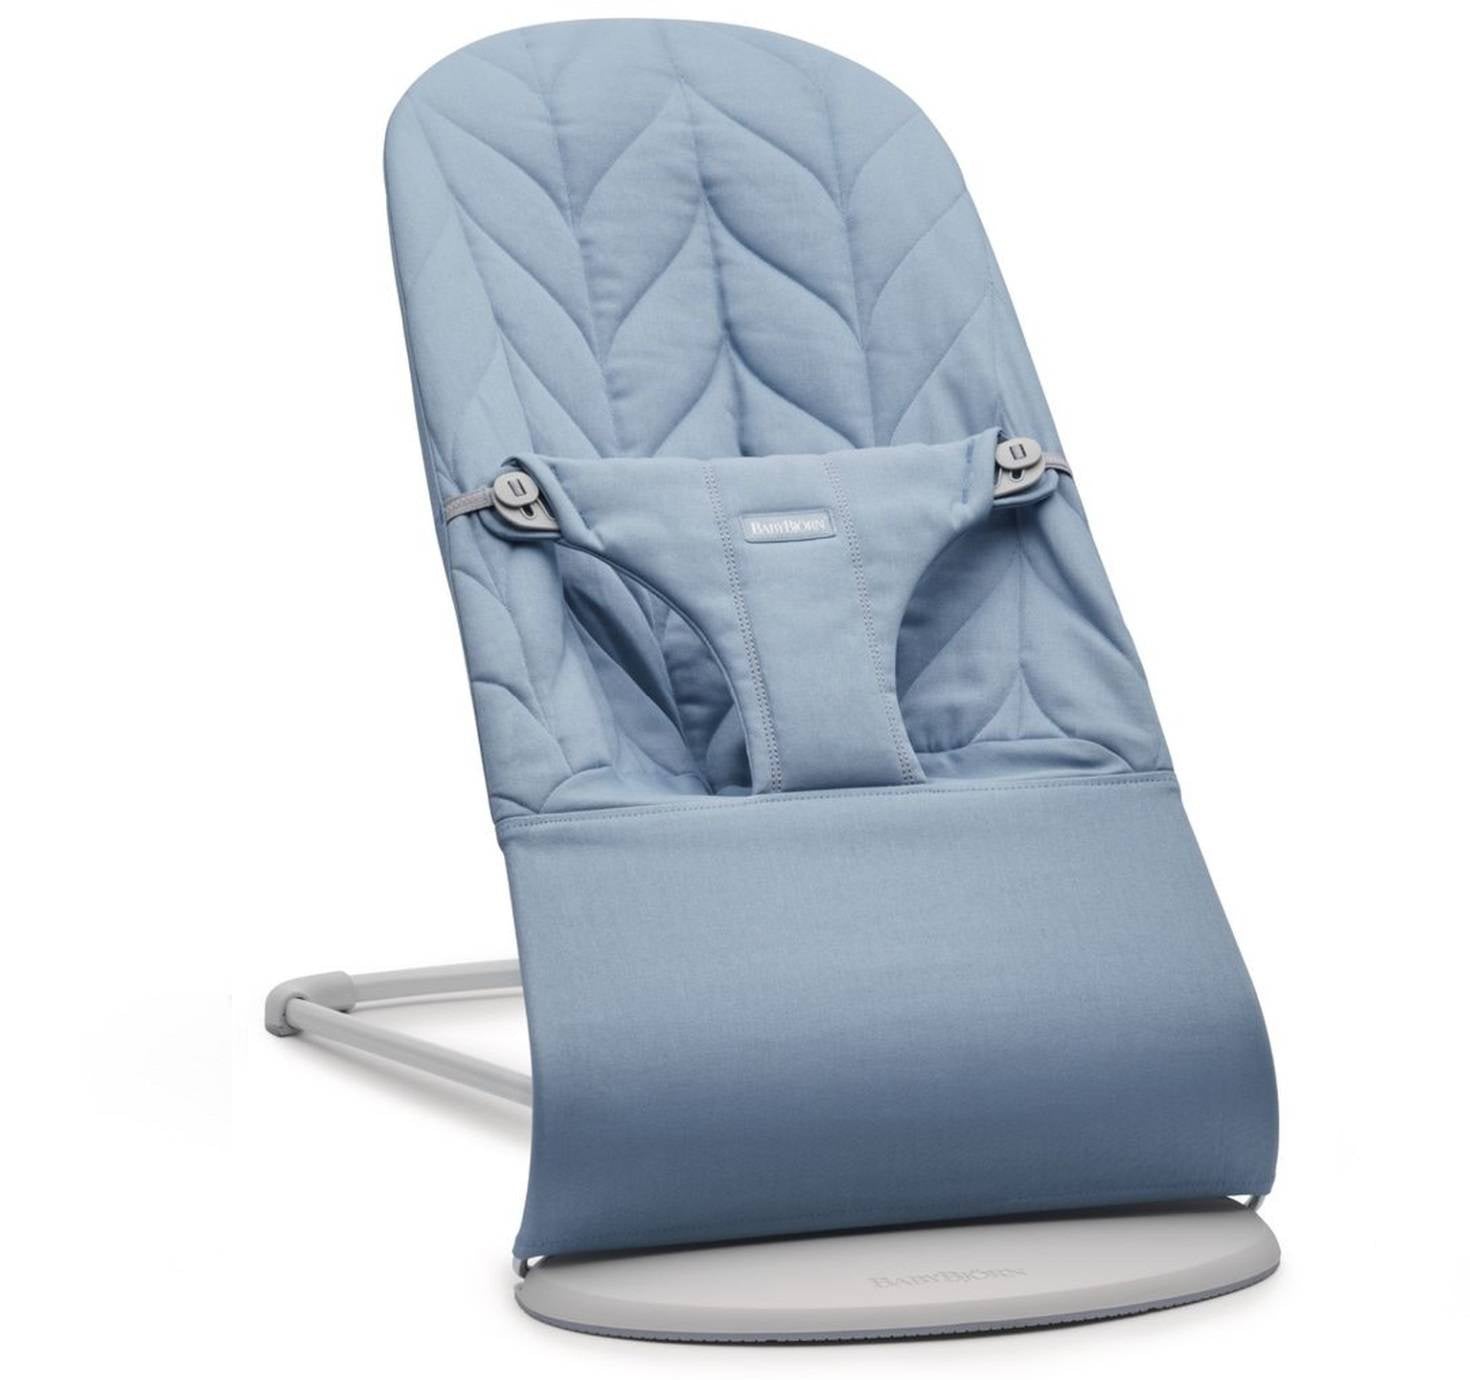 Babybjorn - Bliss Woven deckchair, petal quilt, blue